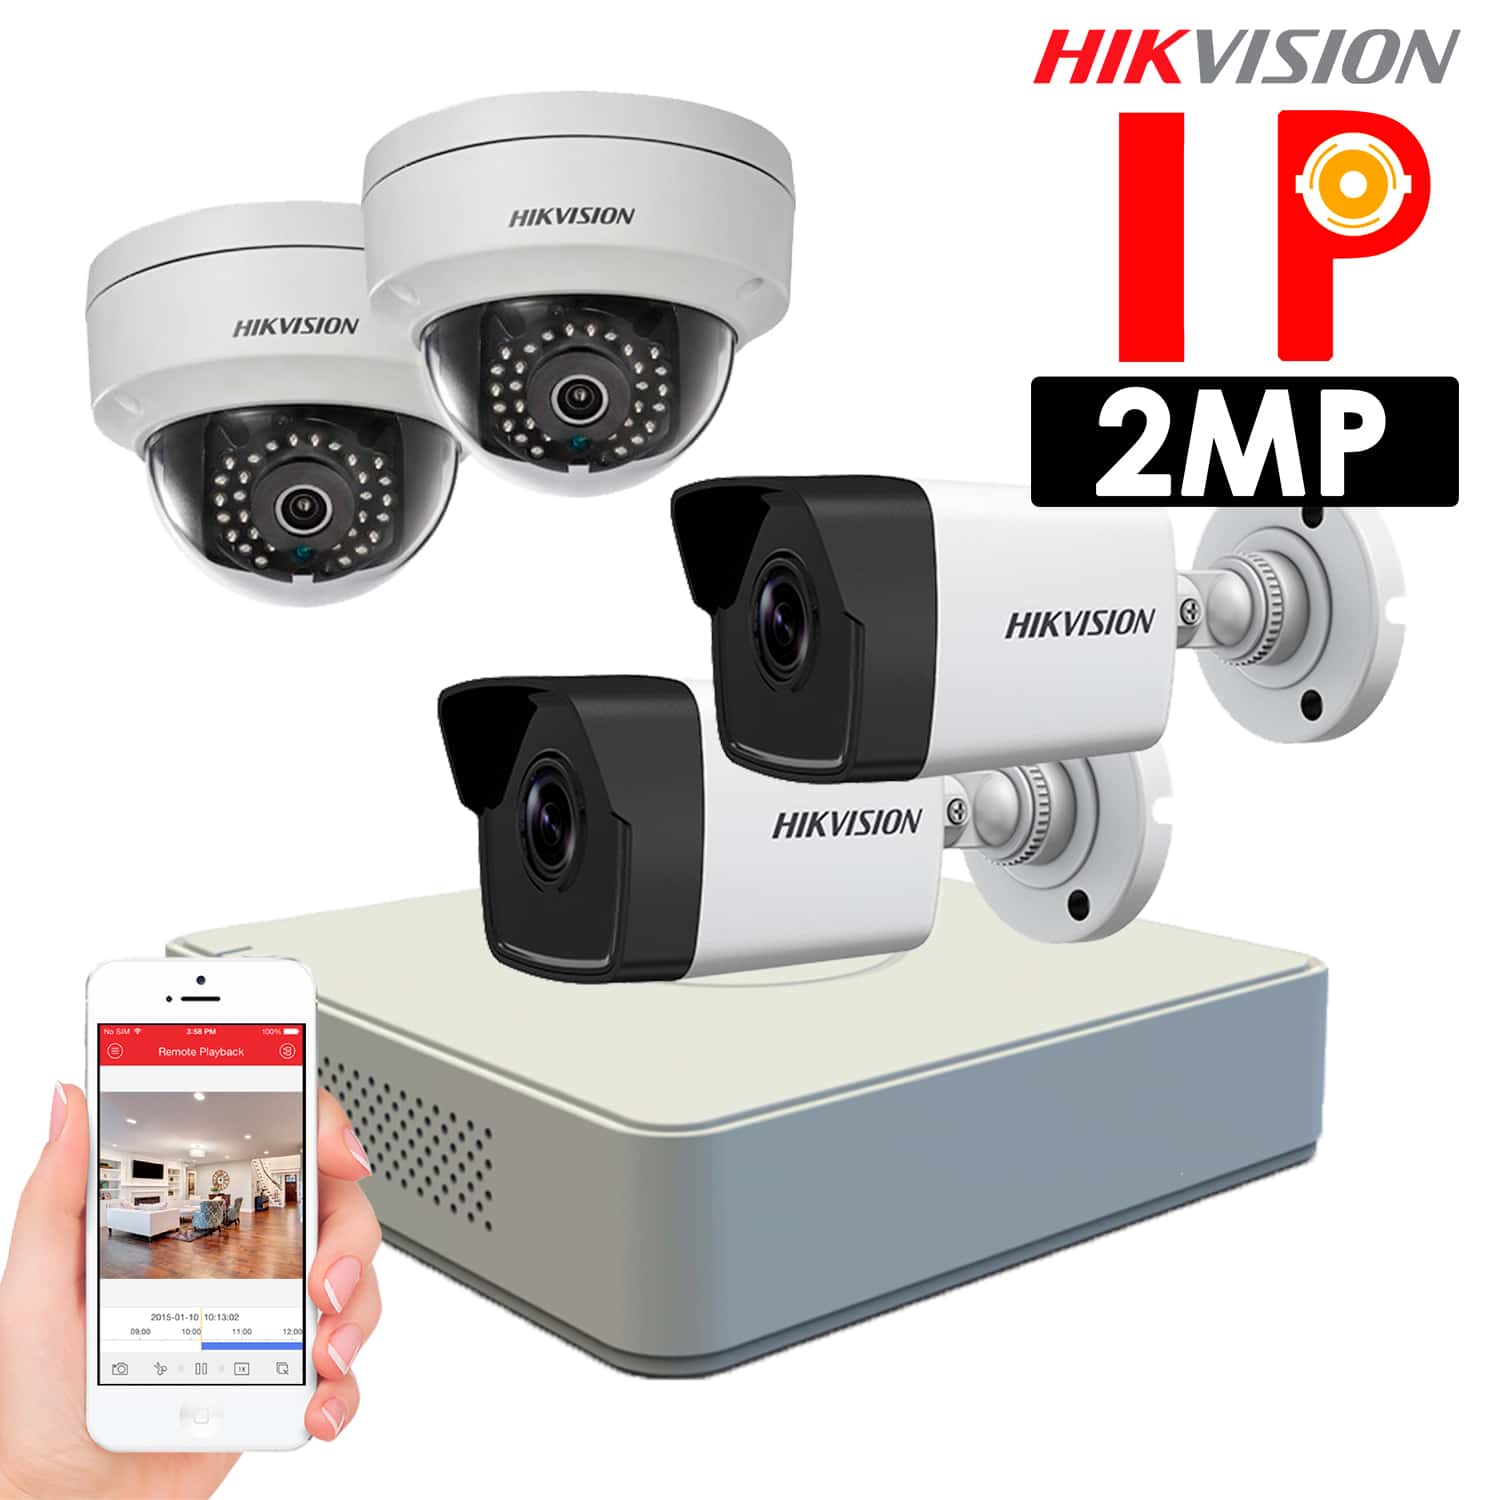 Completamente seco Multitud nombre KIT Cámaras de seguridad IP Hikvision – KIT 4 cámaras IP 2Mp – Tubo y Domo  – HKIPC-042 – Sistemas de Seguridad en Lima Perú – ALFASEGUR